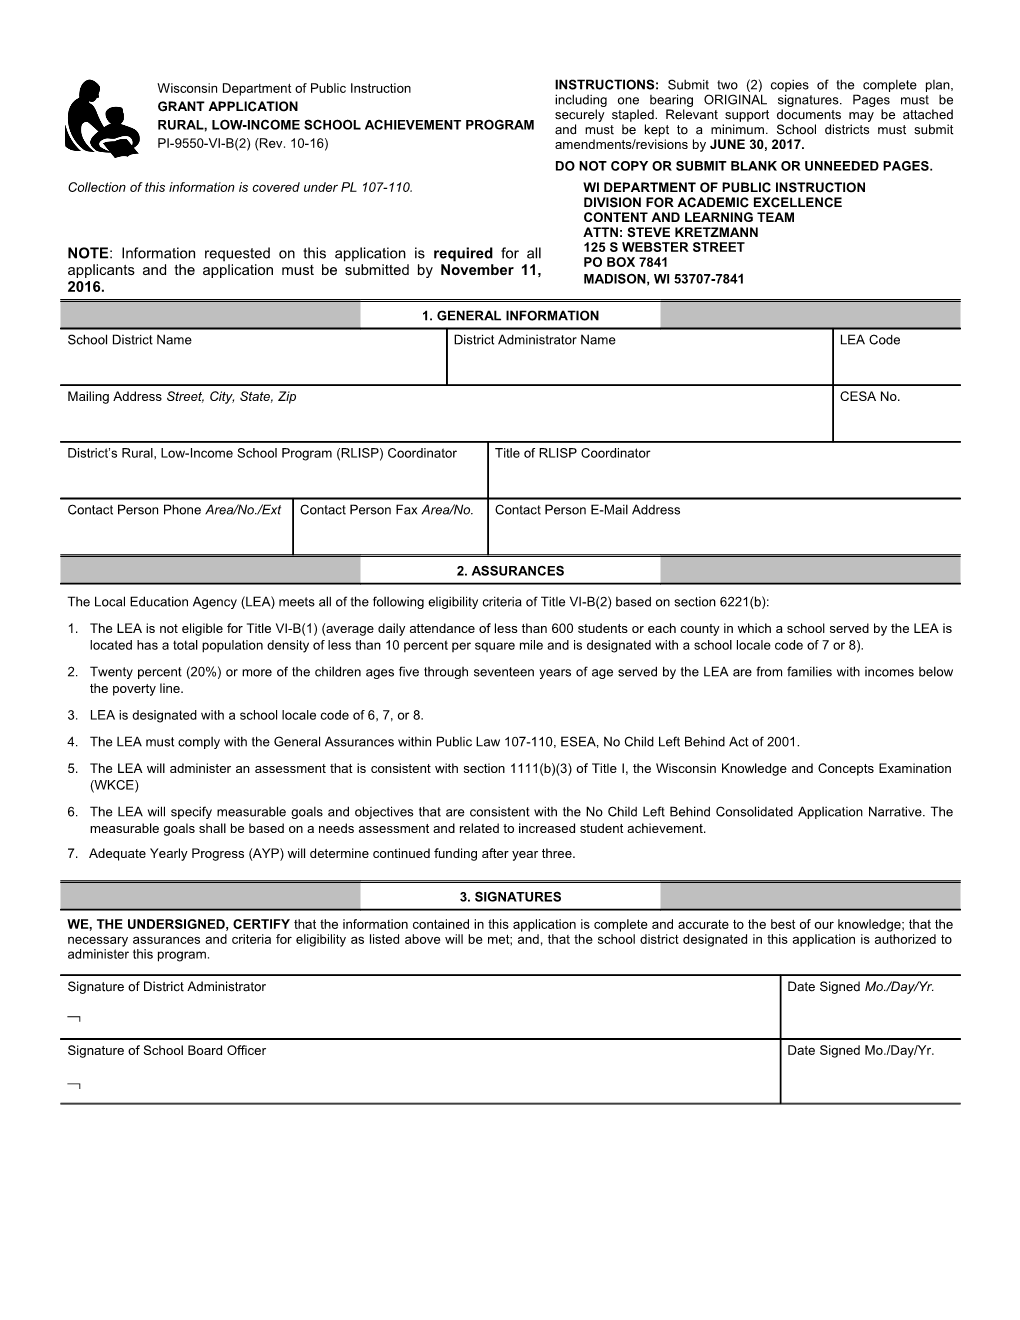 PI-9550-VI-B(2) Grant Application Rural, Low-Income School Achievement Program